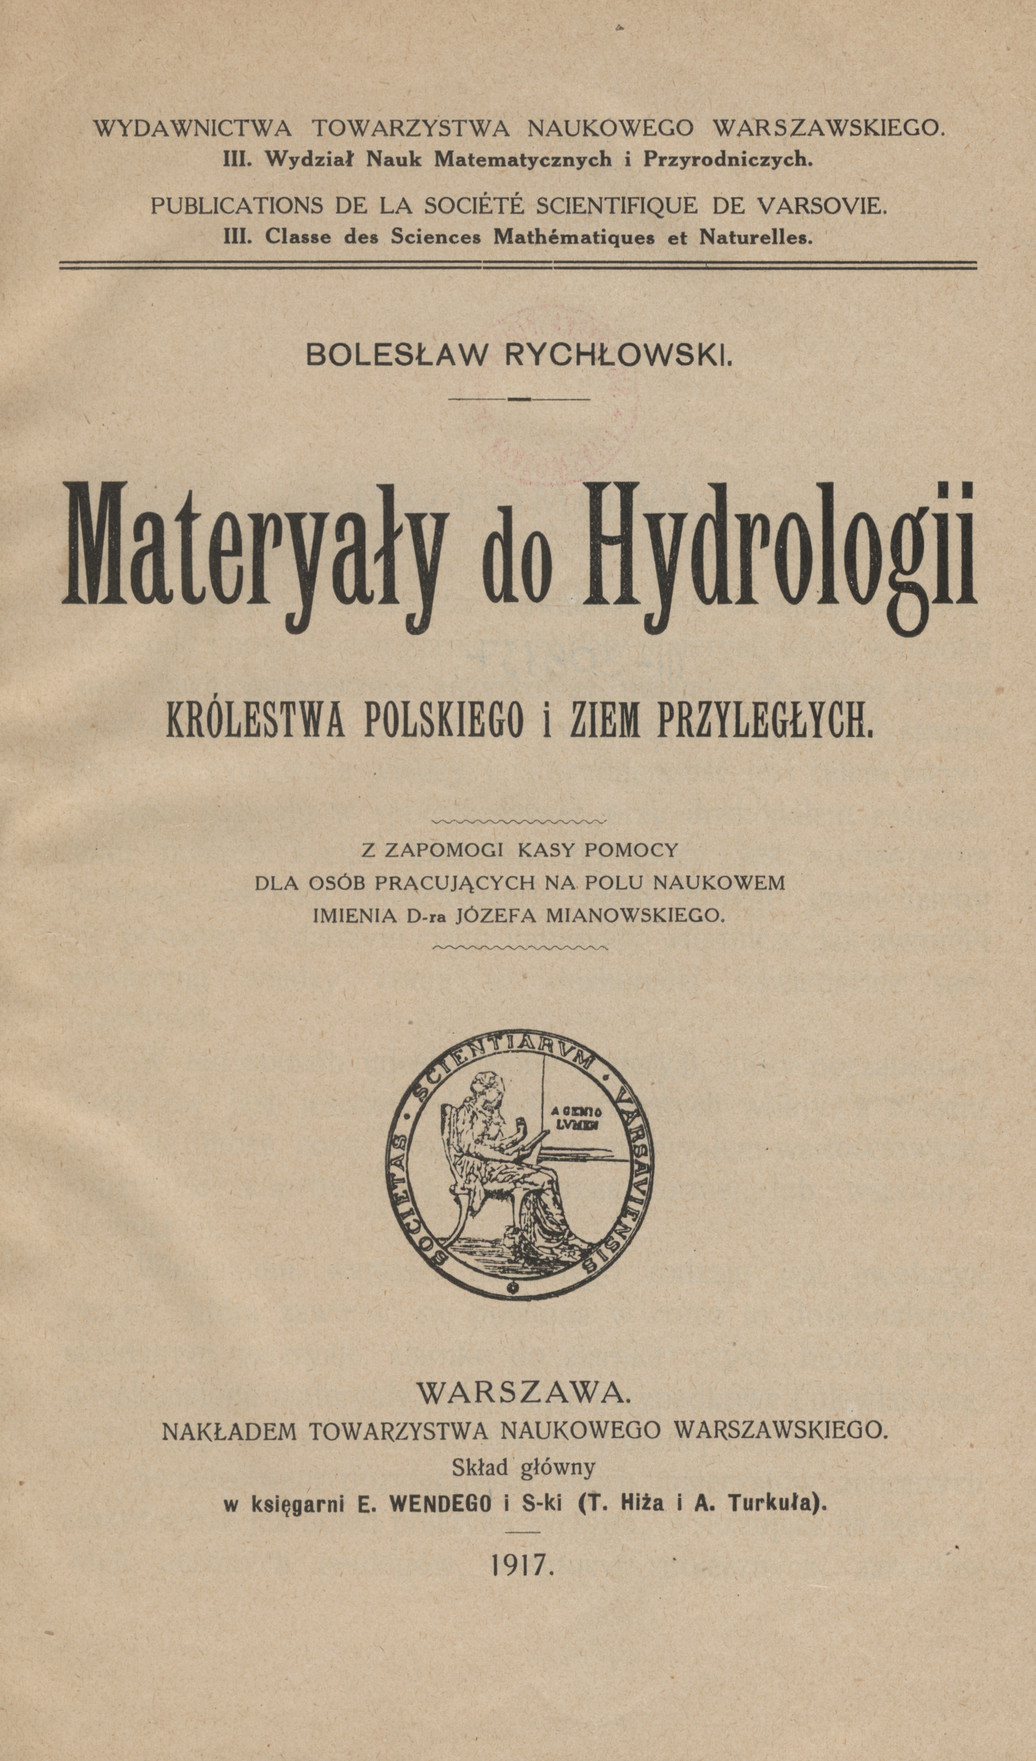 Materyały do hydrologii Królestwa Polskiego i ziem przyległych